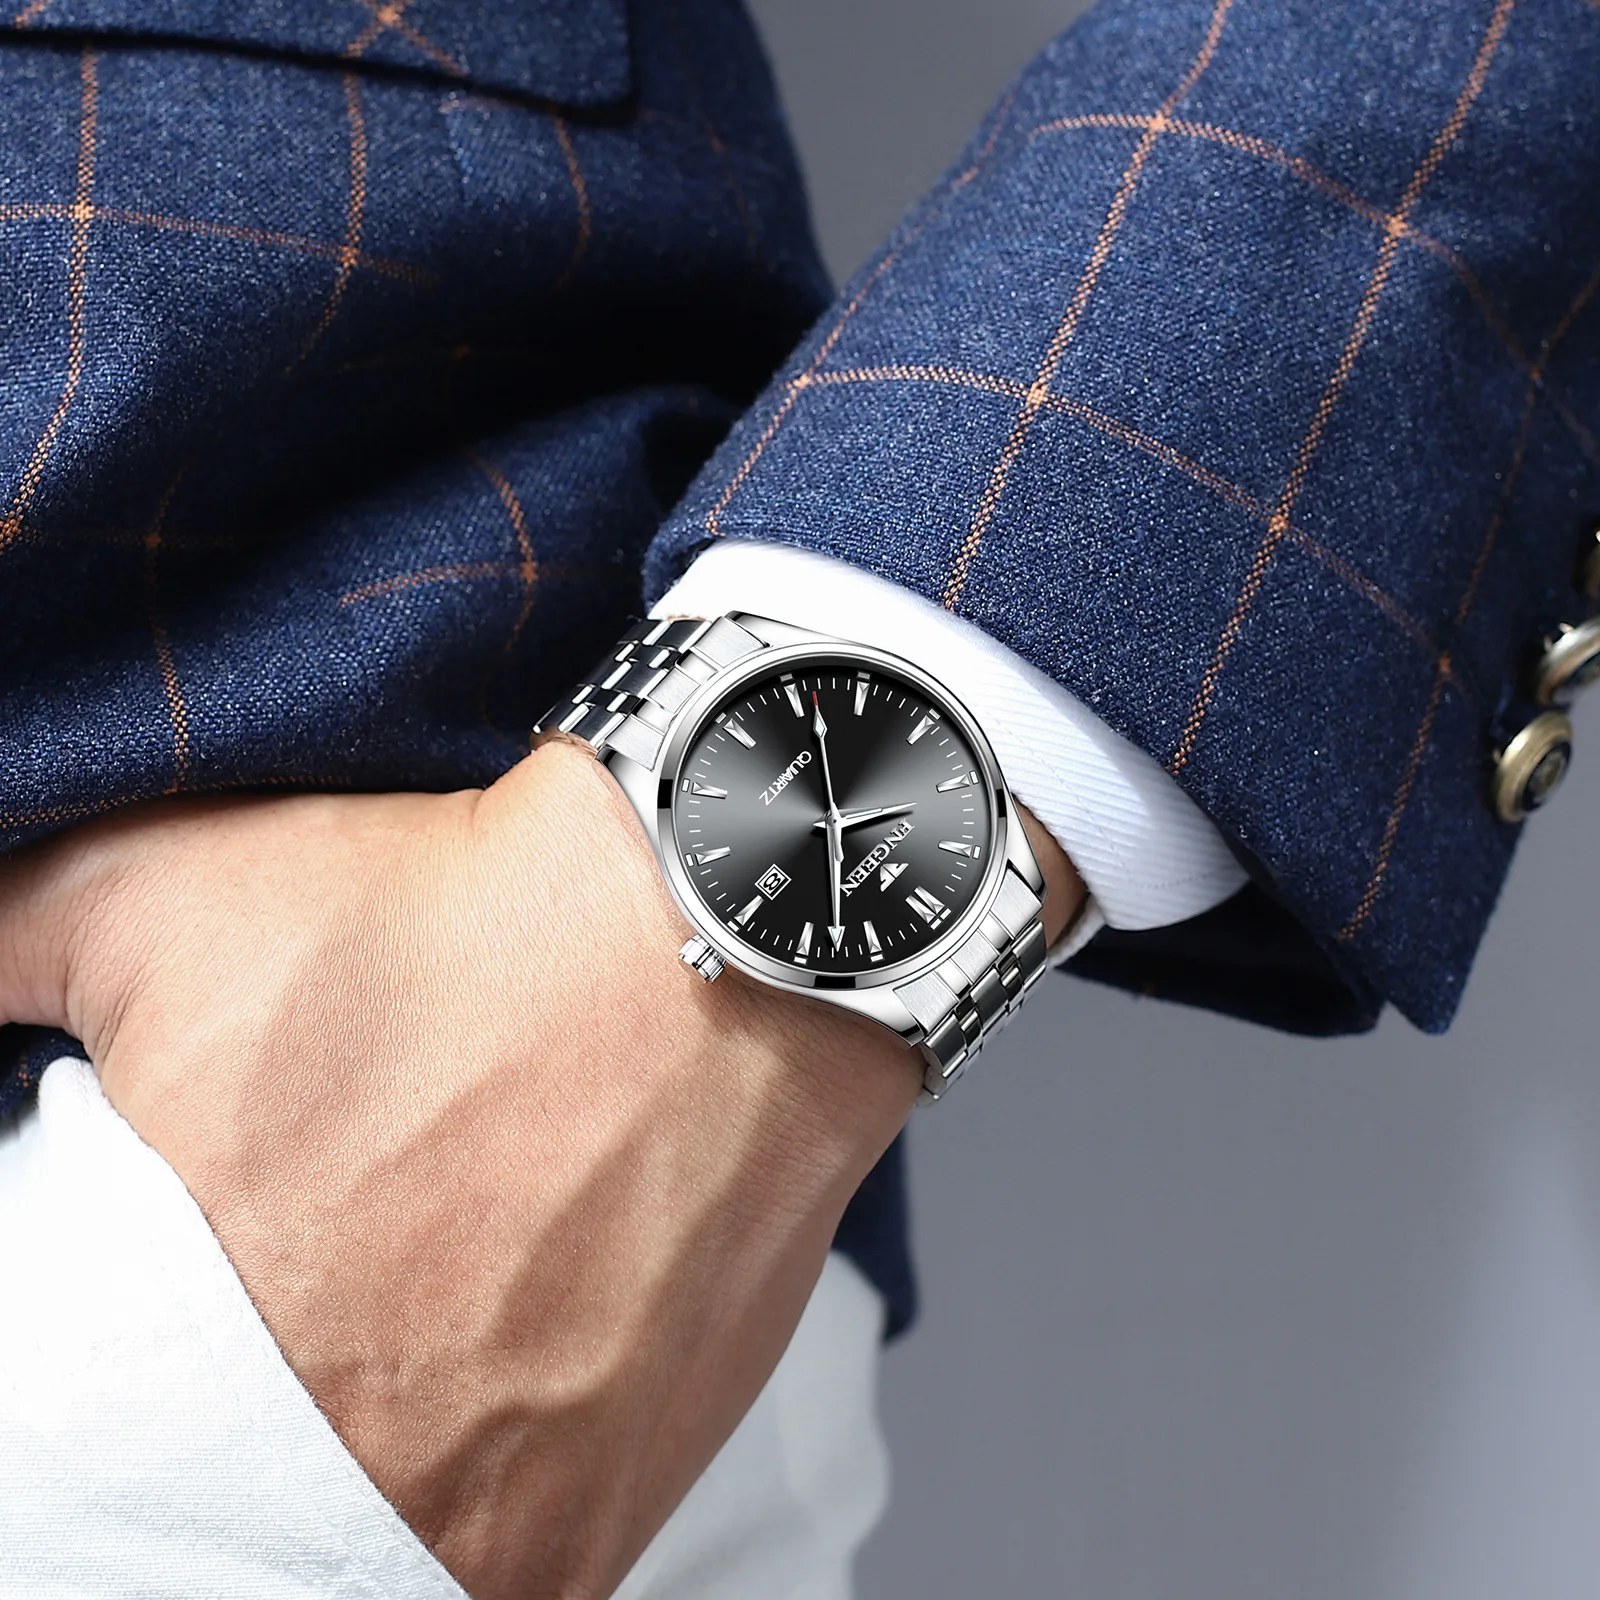 Relogio Masculino мужские часы Топ бренд Роскошные модные кварцевые часы мужские часы спортивные деловые наручные часы Прямая поставка